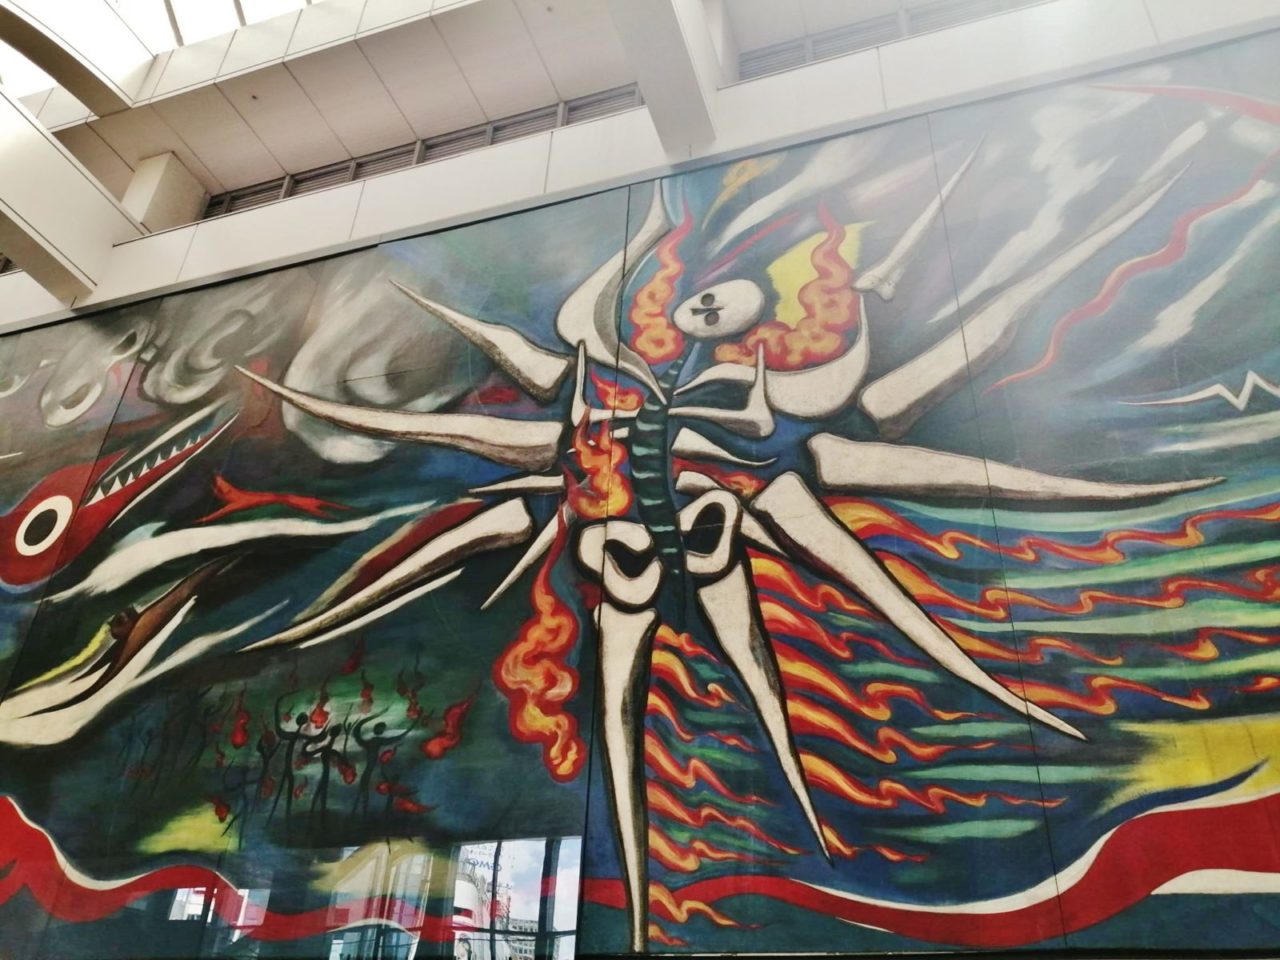 渋谷駅で見上げるべき岡本太郎の「明日への神話」の30メートルの壁画の画像